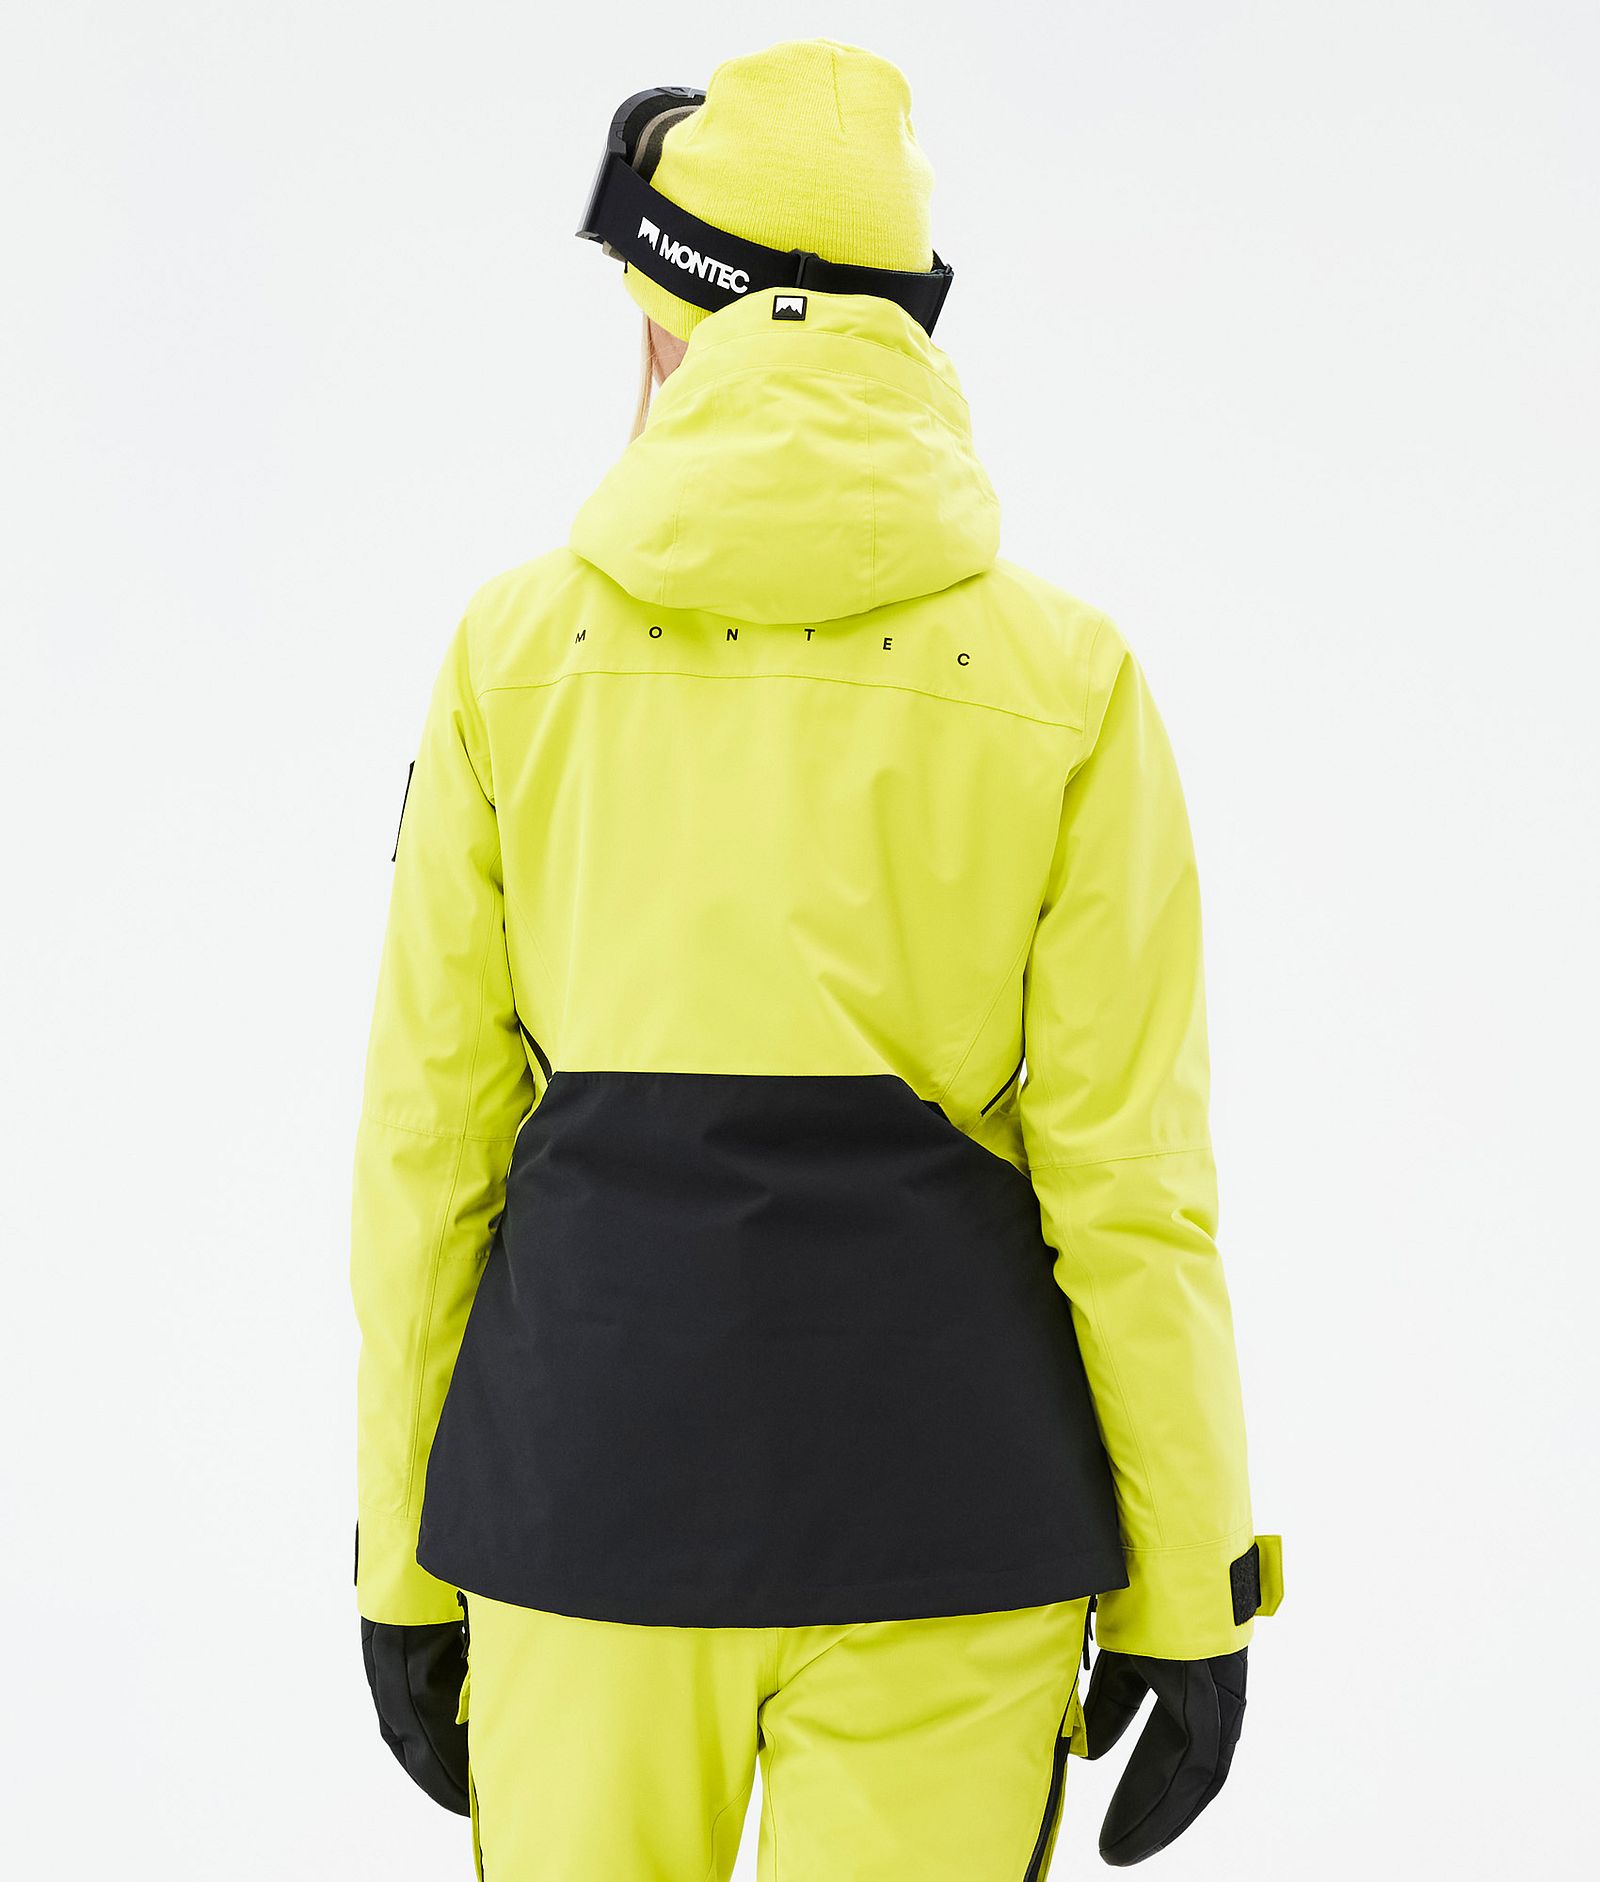 Moss W Kurtka Snowboardowa Kobiety Bright Yellow/Black Renewed, Zdjęcie 7 z 10